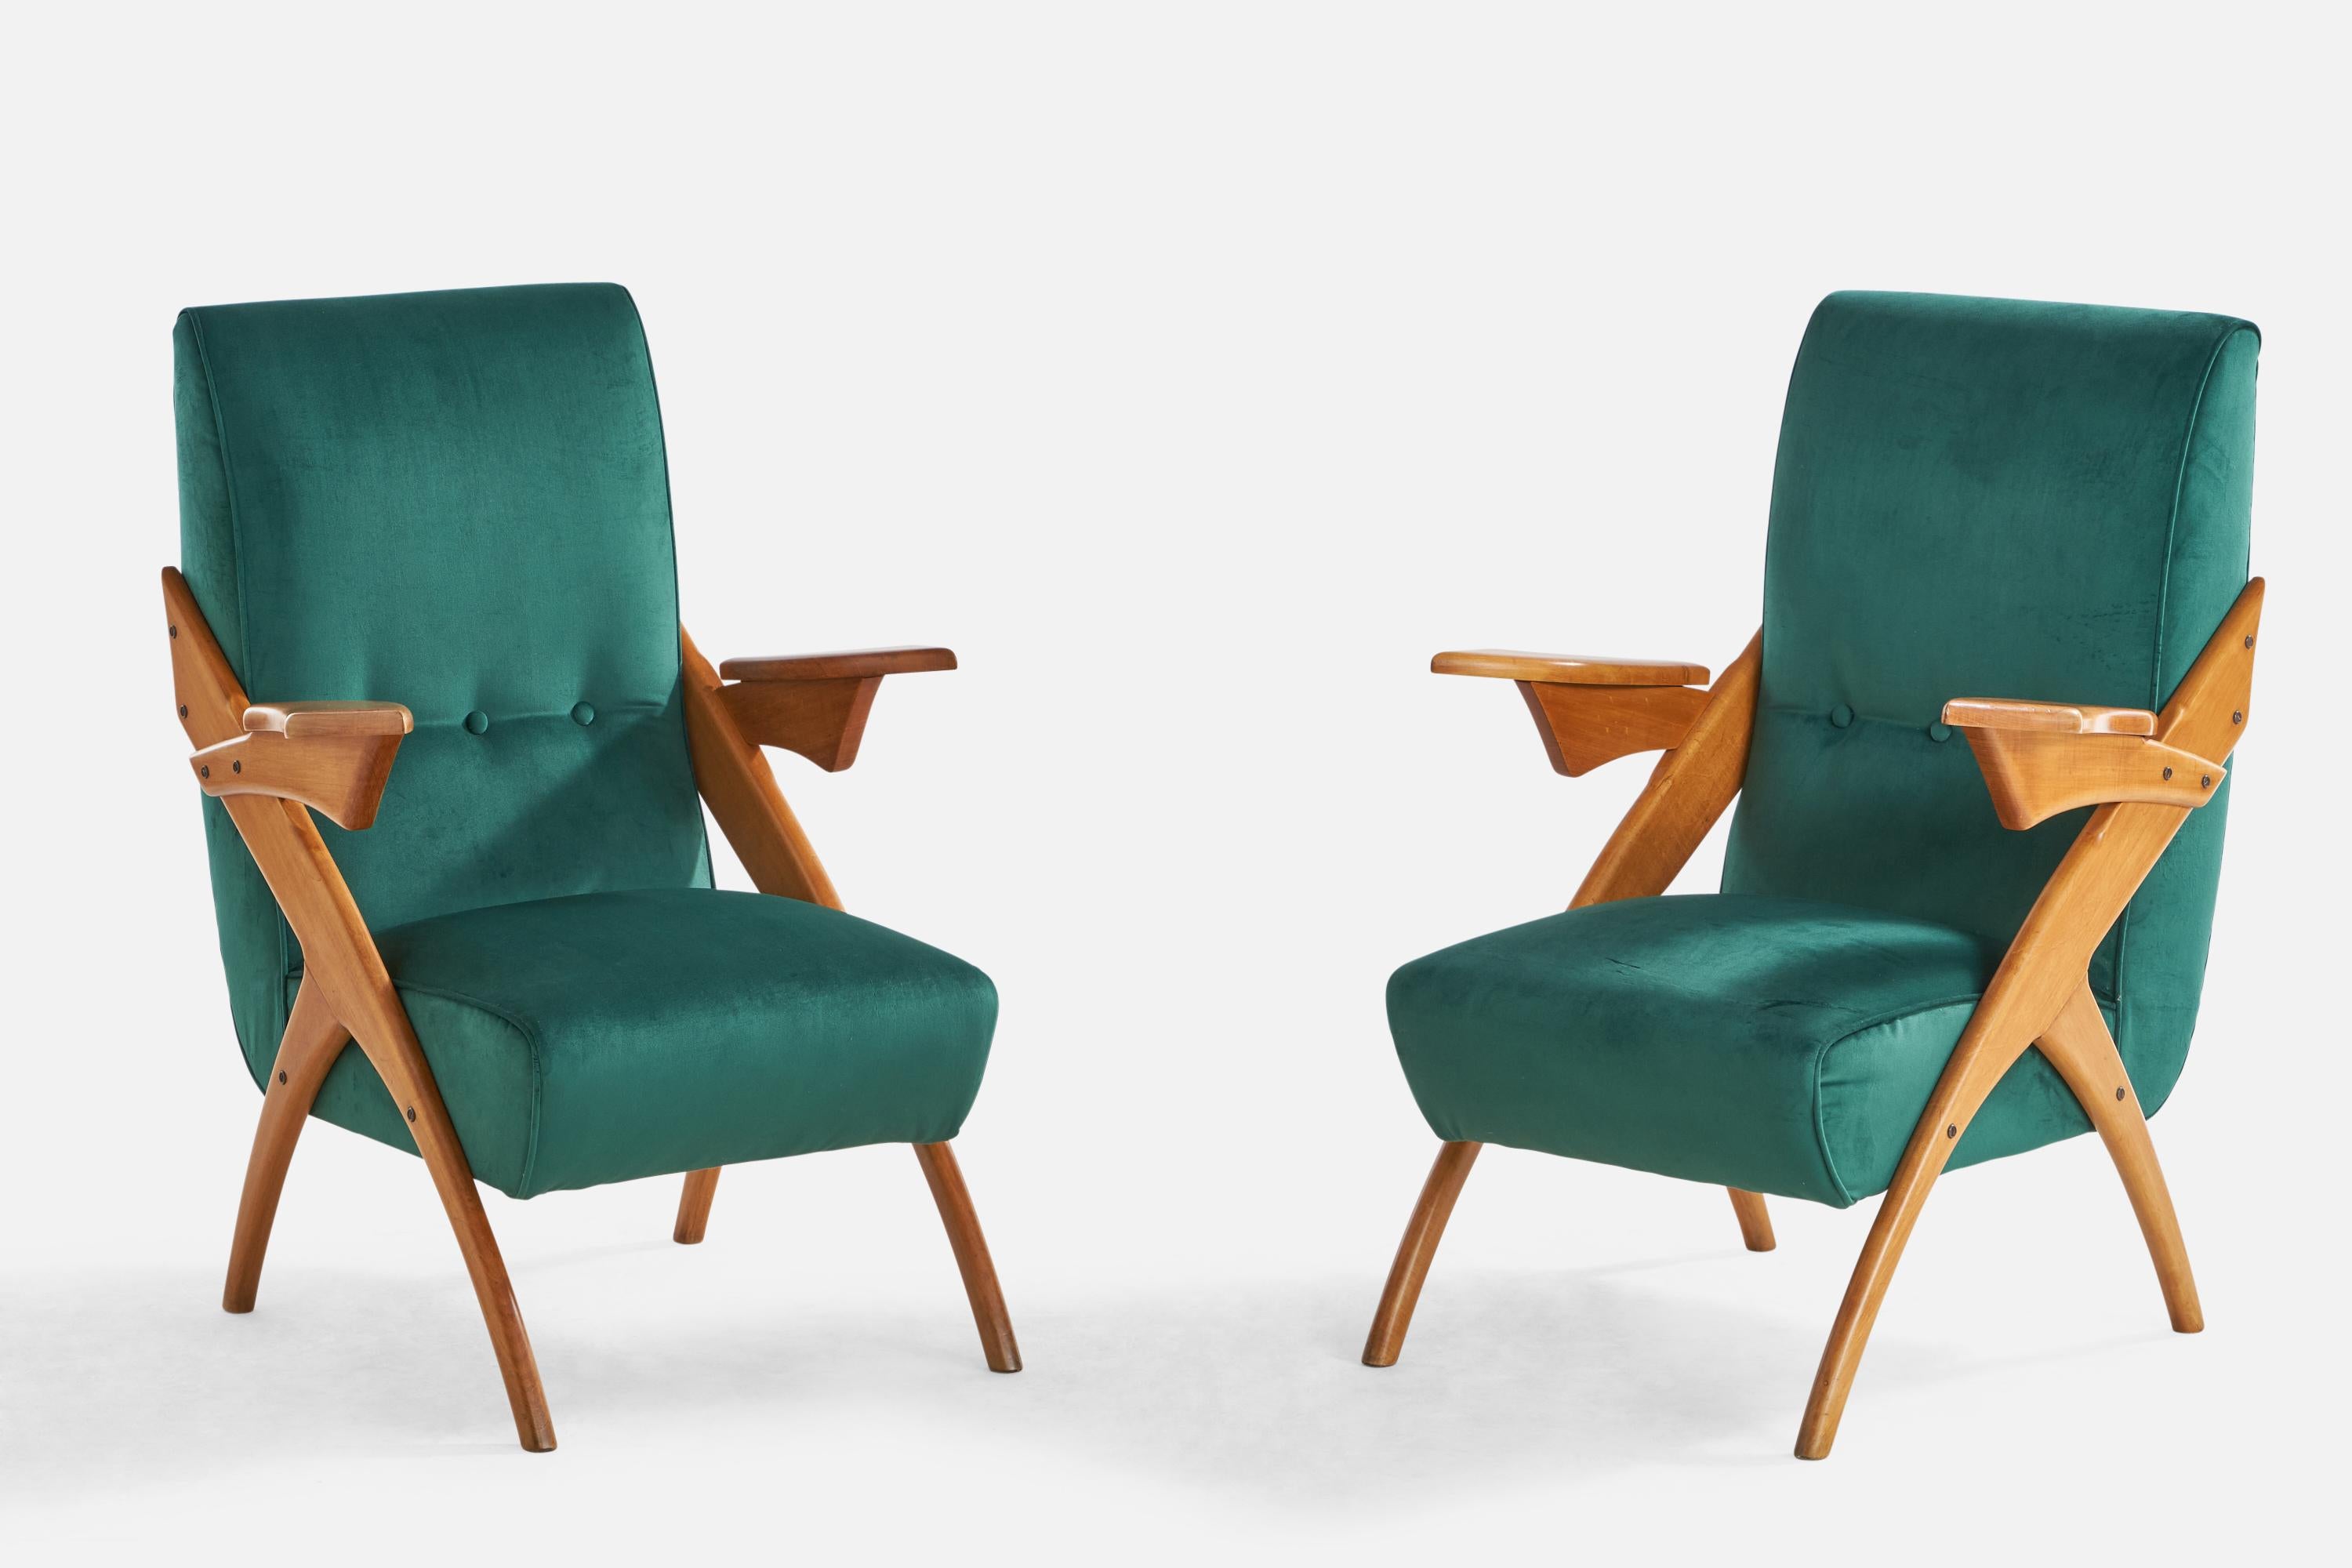 Ein Paar Sessel aus Holz und blauem Samt, entworfen und hergestellt in Argentinien, 1950er Jahre.

Sitzhöhe: 15